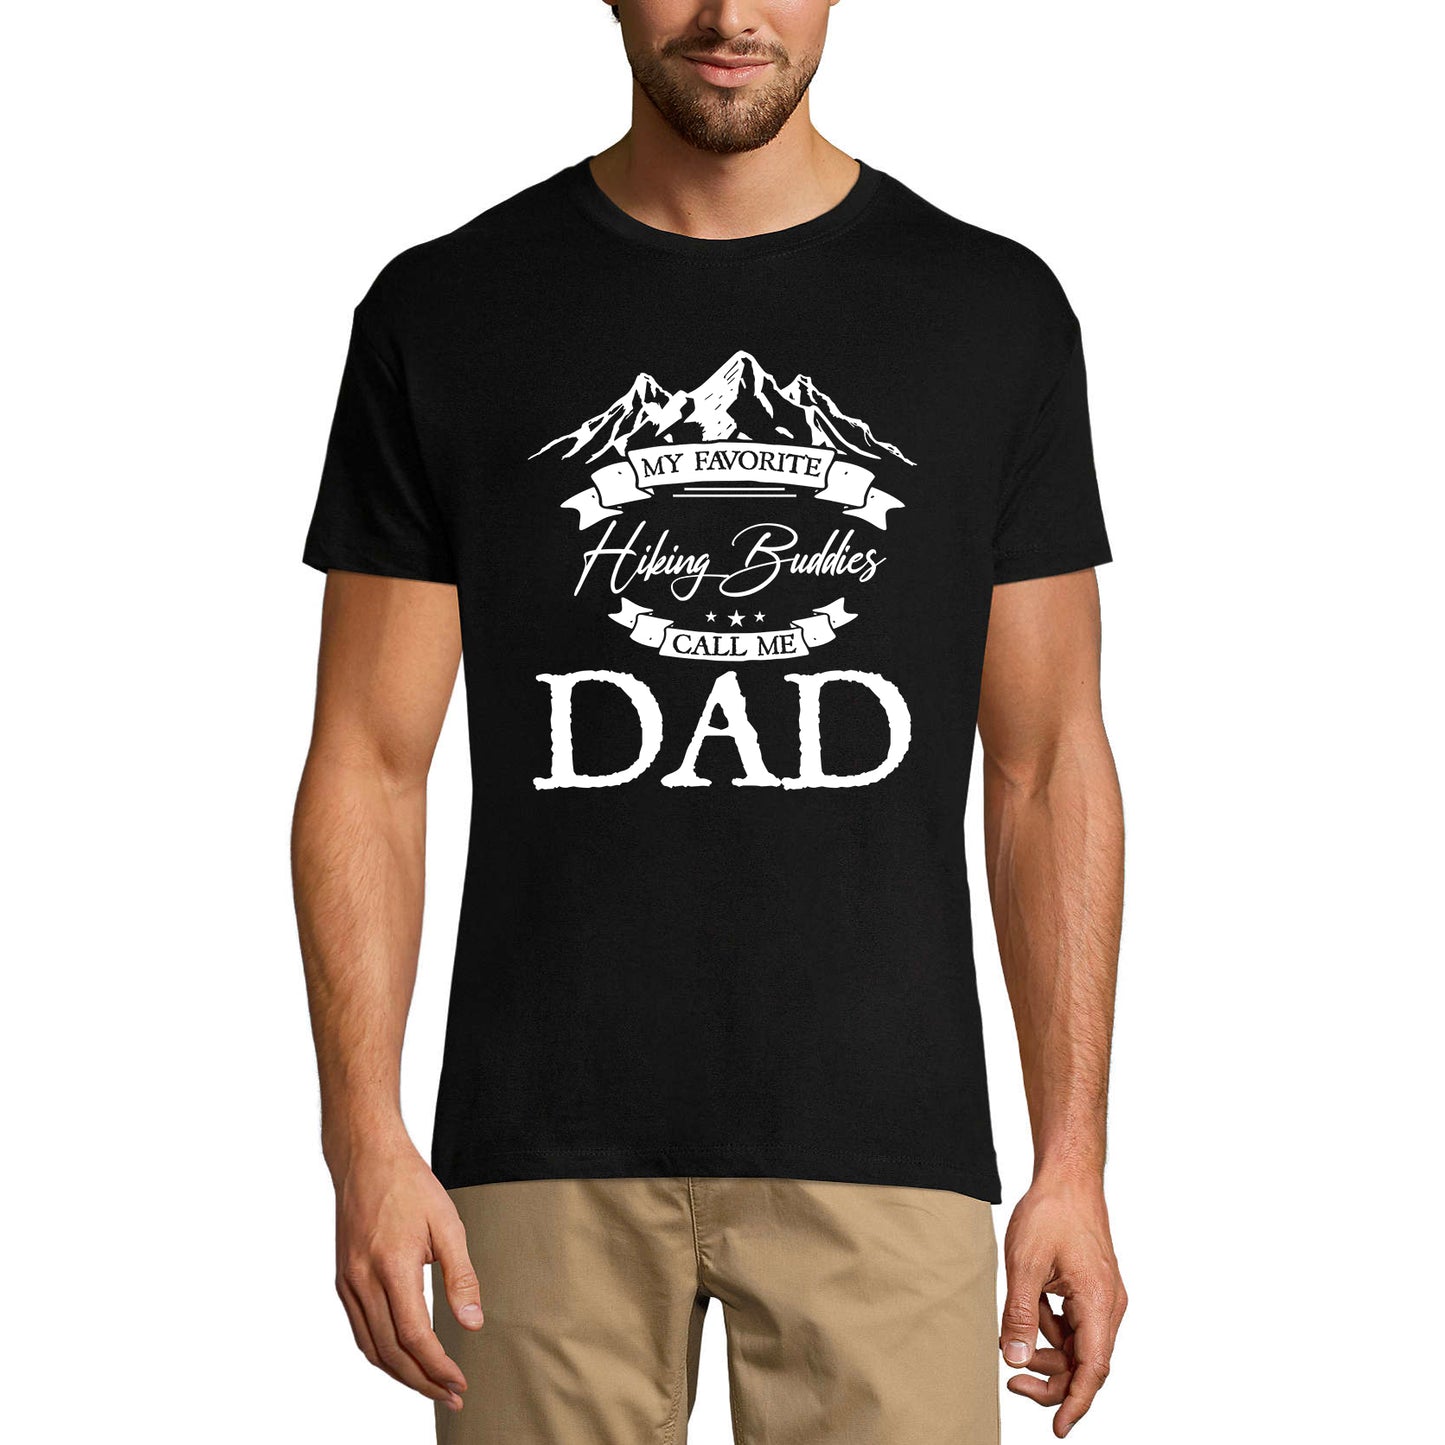 ULTRABASIC Men's T-Shirt My Favorite Hiking Buddies Call Me Dad - Mountain Hiker Tee Shirt